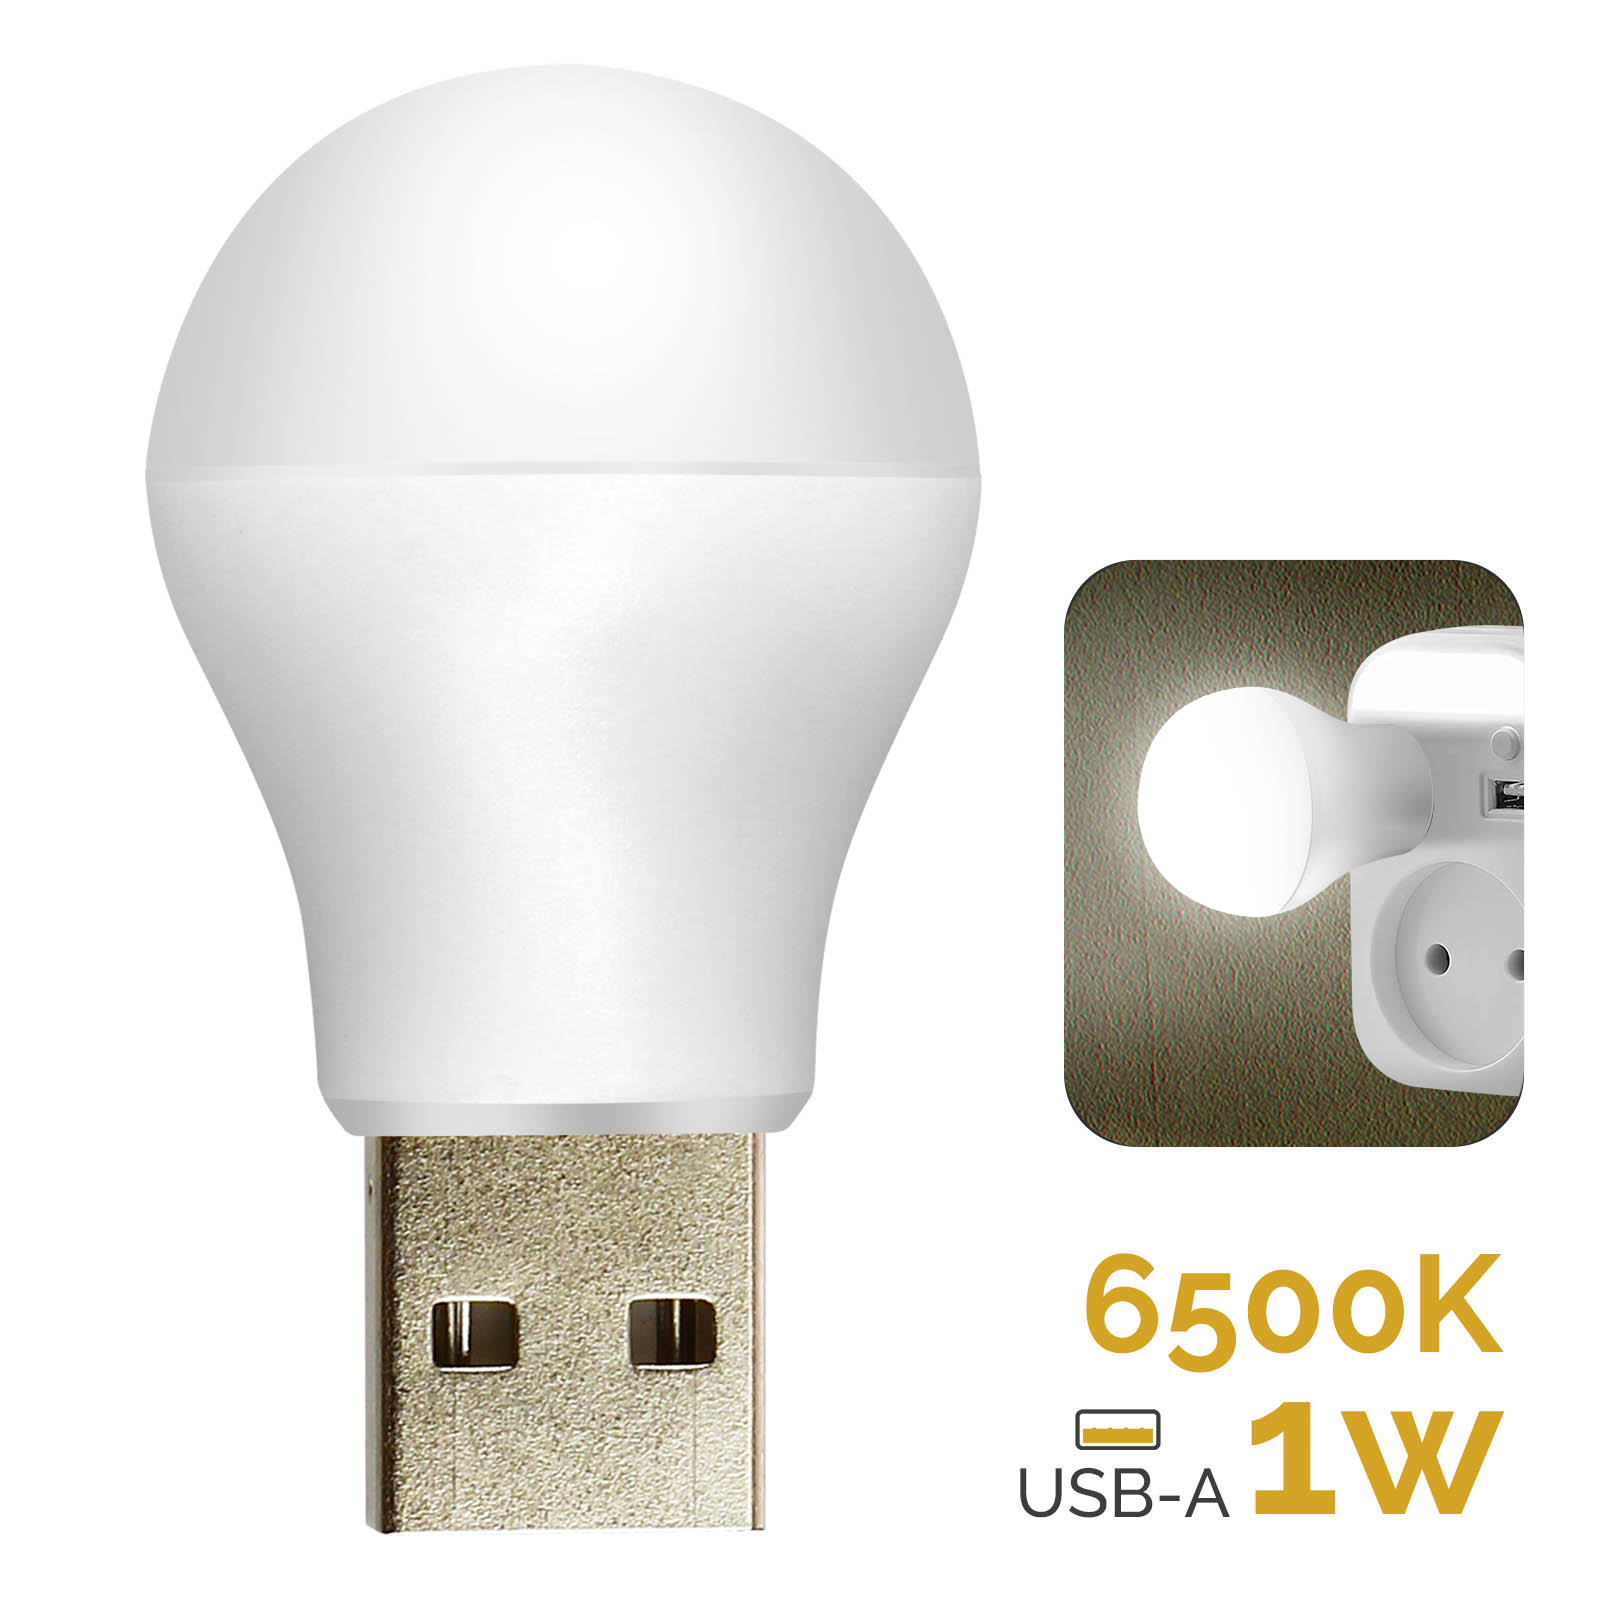 Bombilla LED USB de 1W y 6500K con formato compacto y universal - Spain